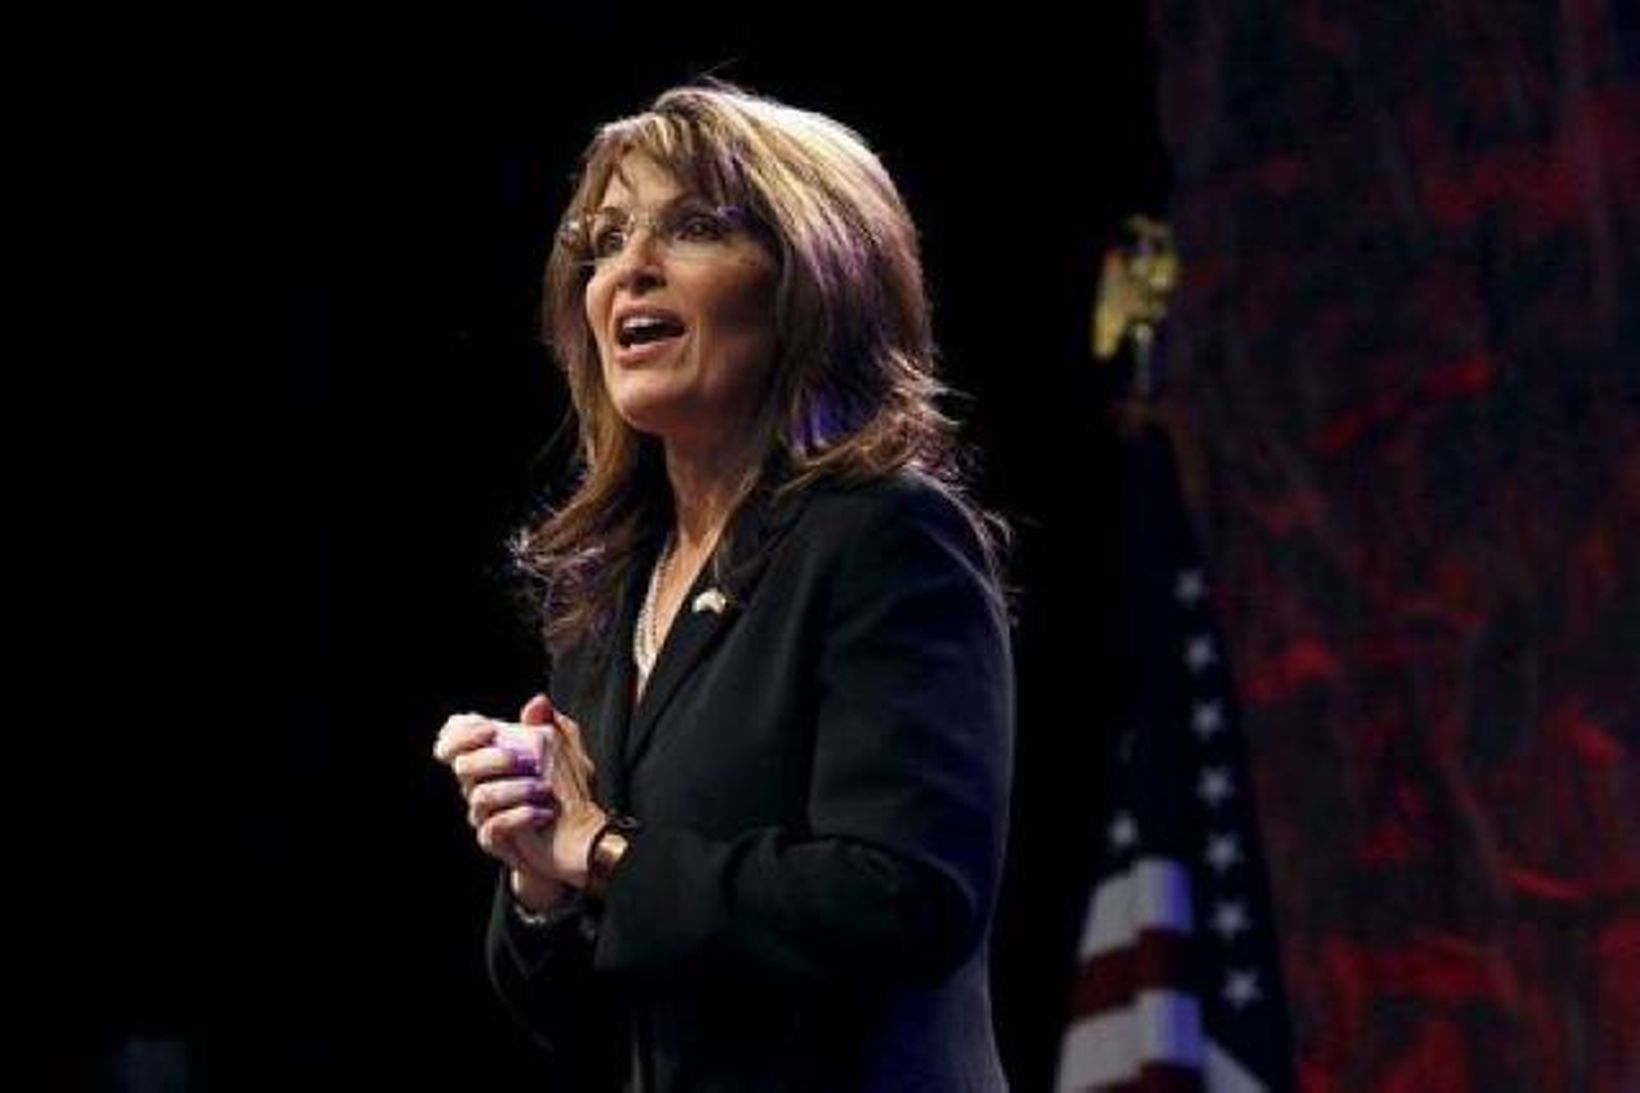 Sarah Palin flytur ræðu sína í Nashville í nótt.